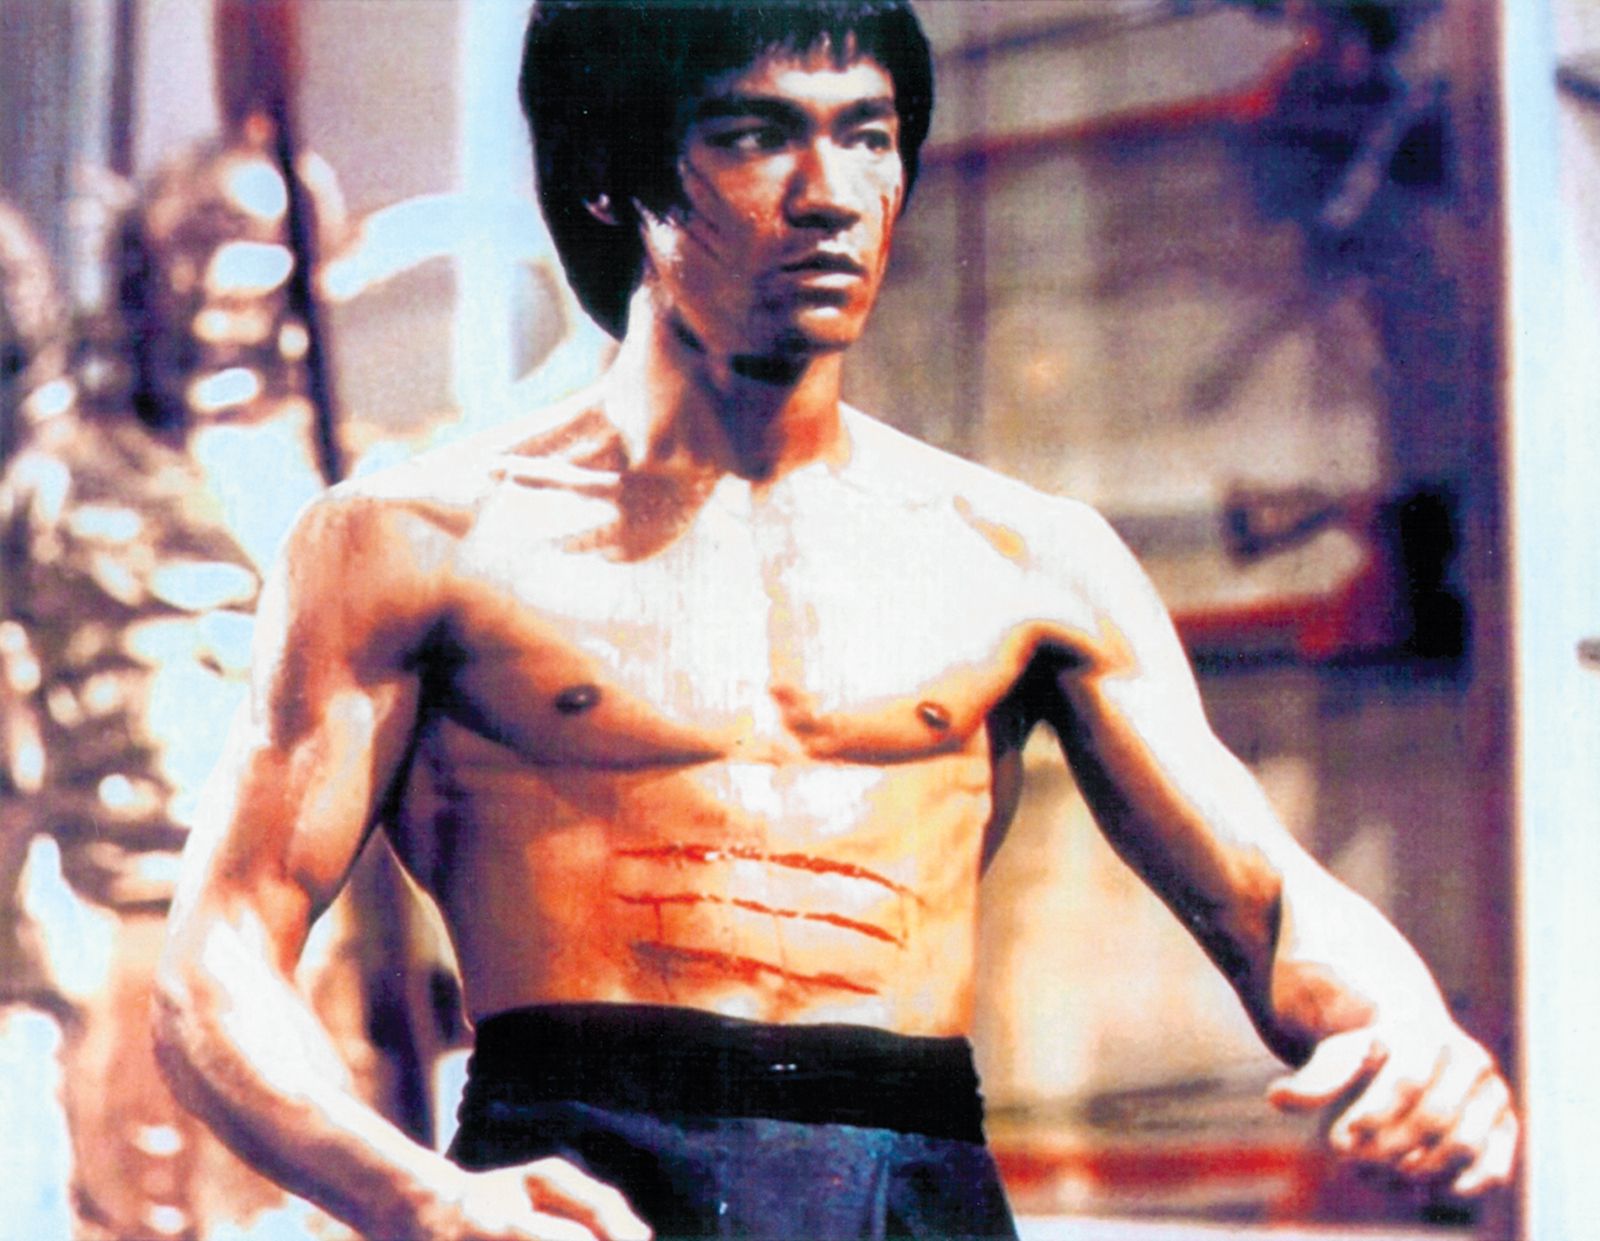 Bruce Lee Image - KibrisPDR